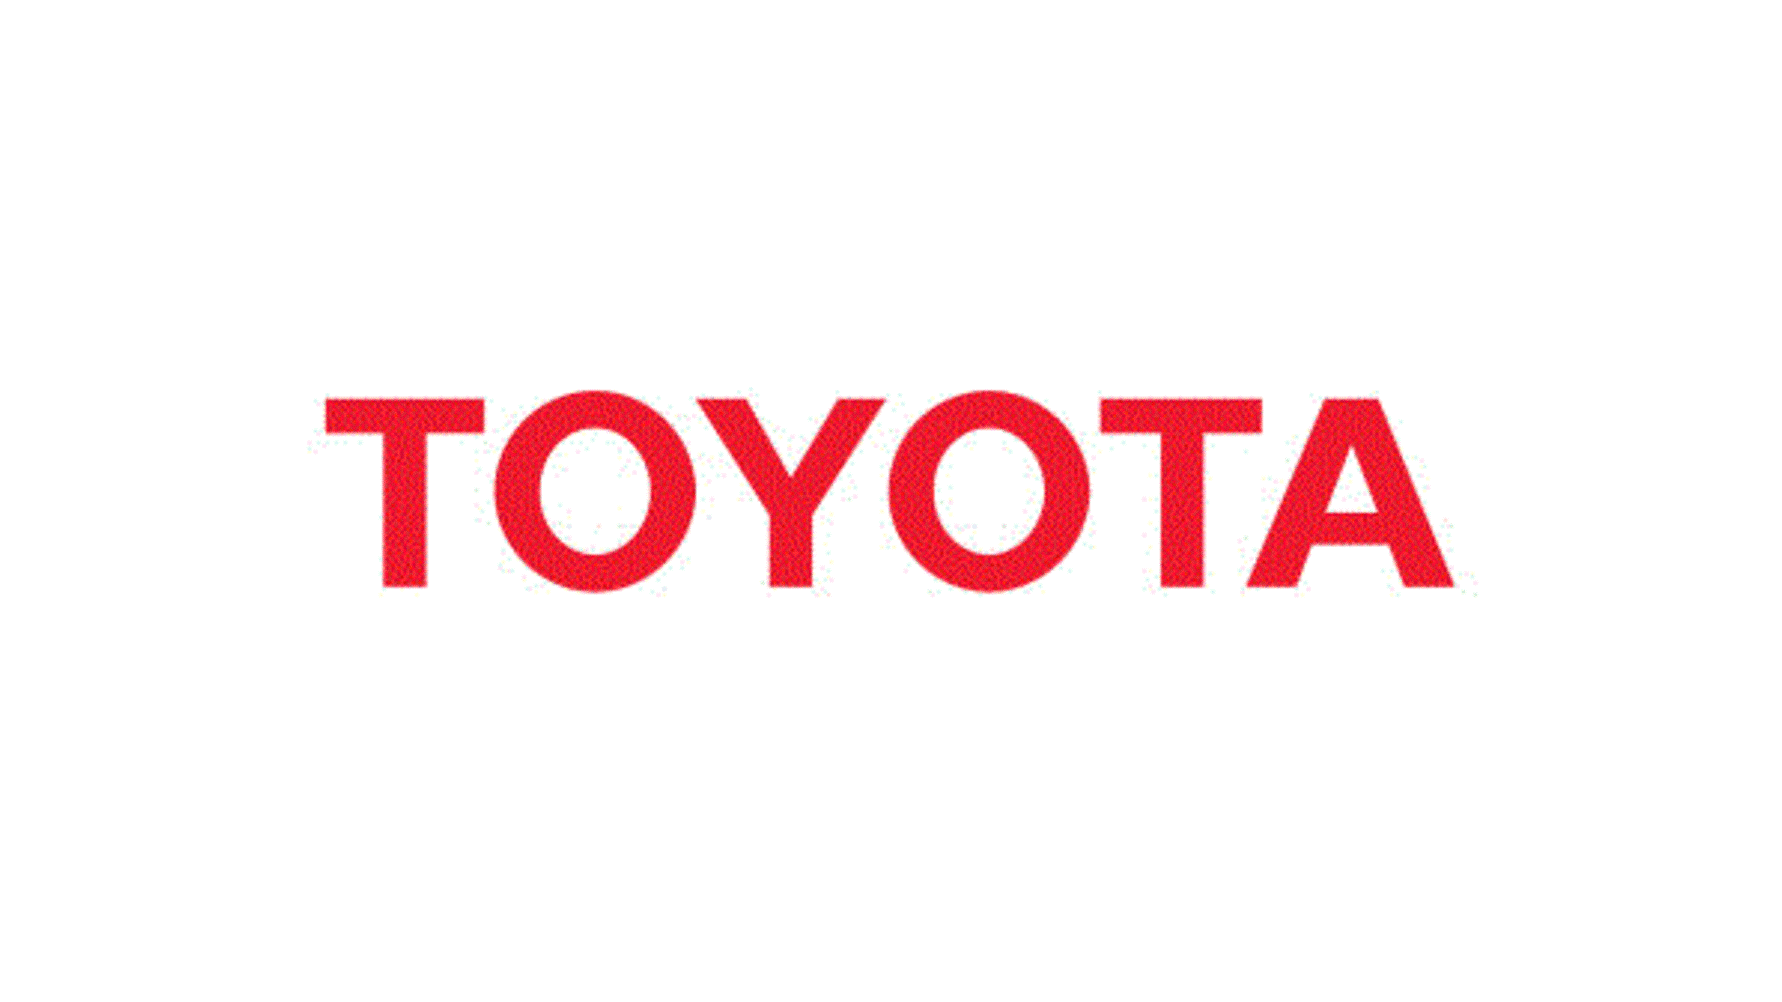 Toyota topper Interbrands Global Brands 2023-kåring for 20. gang på rad